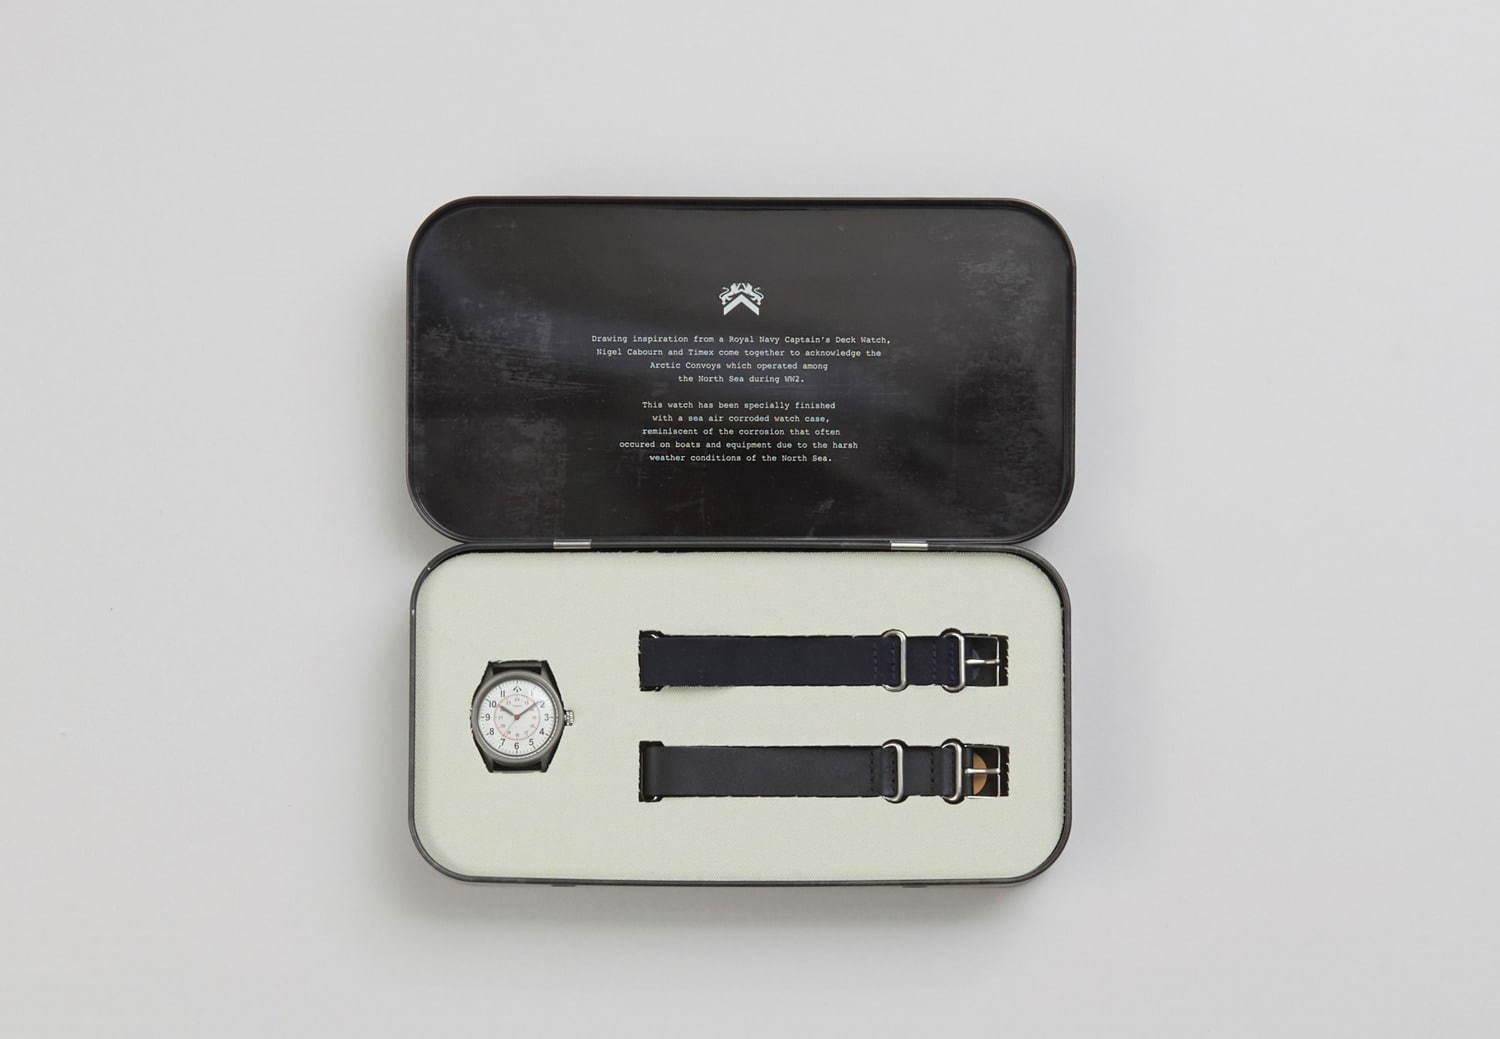 ナイジェル・ケーボン×タイメックスのステンレスケース腕時計、イギリス海軍のデッキウォッチから着想 コピー